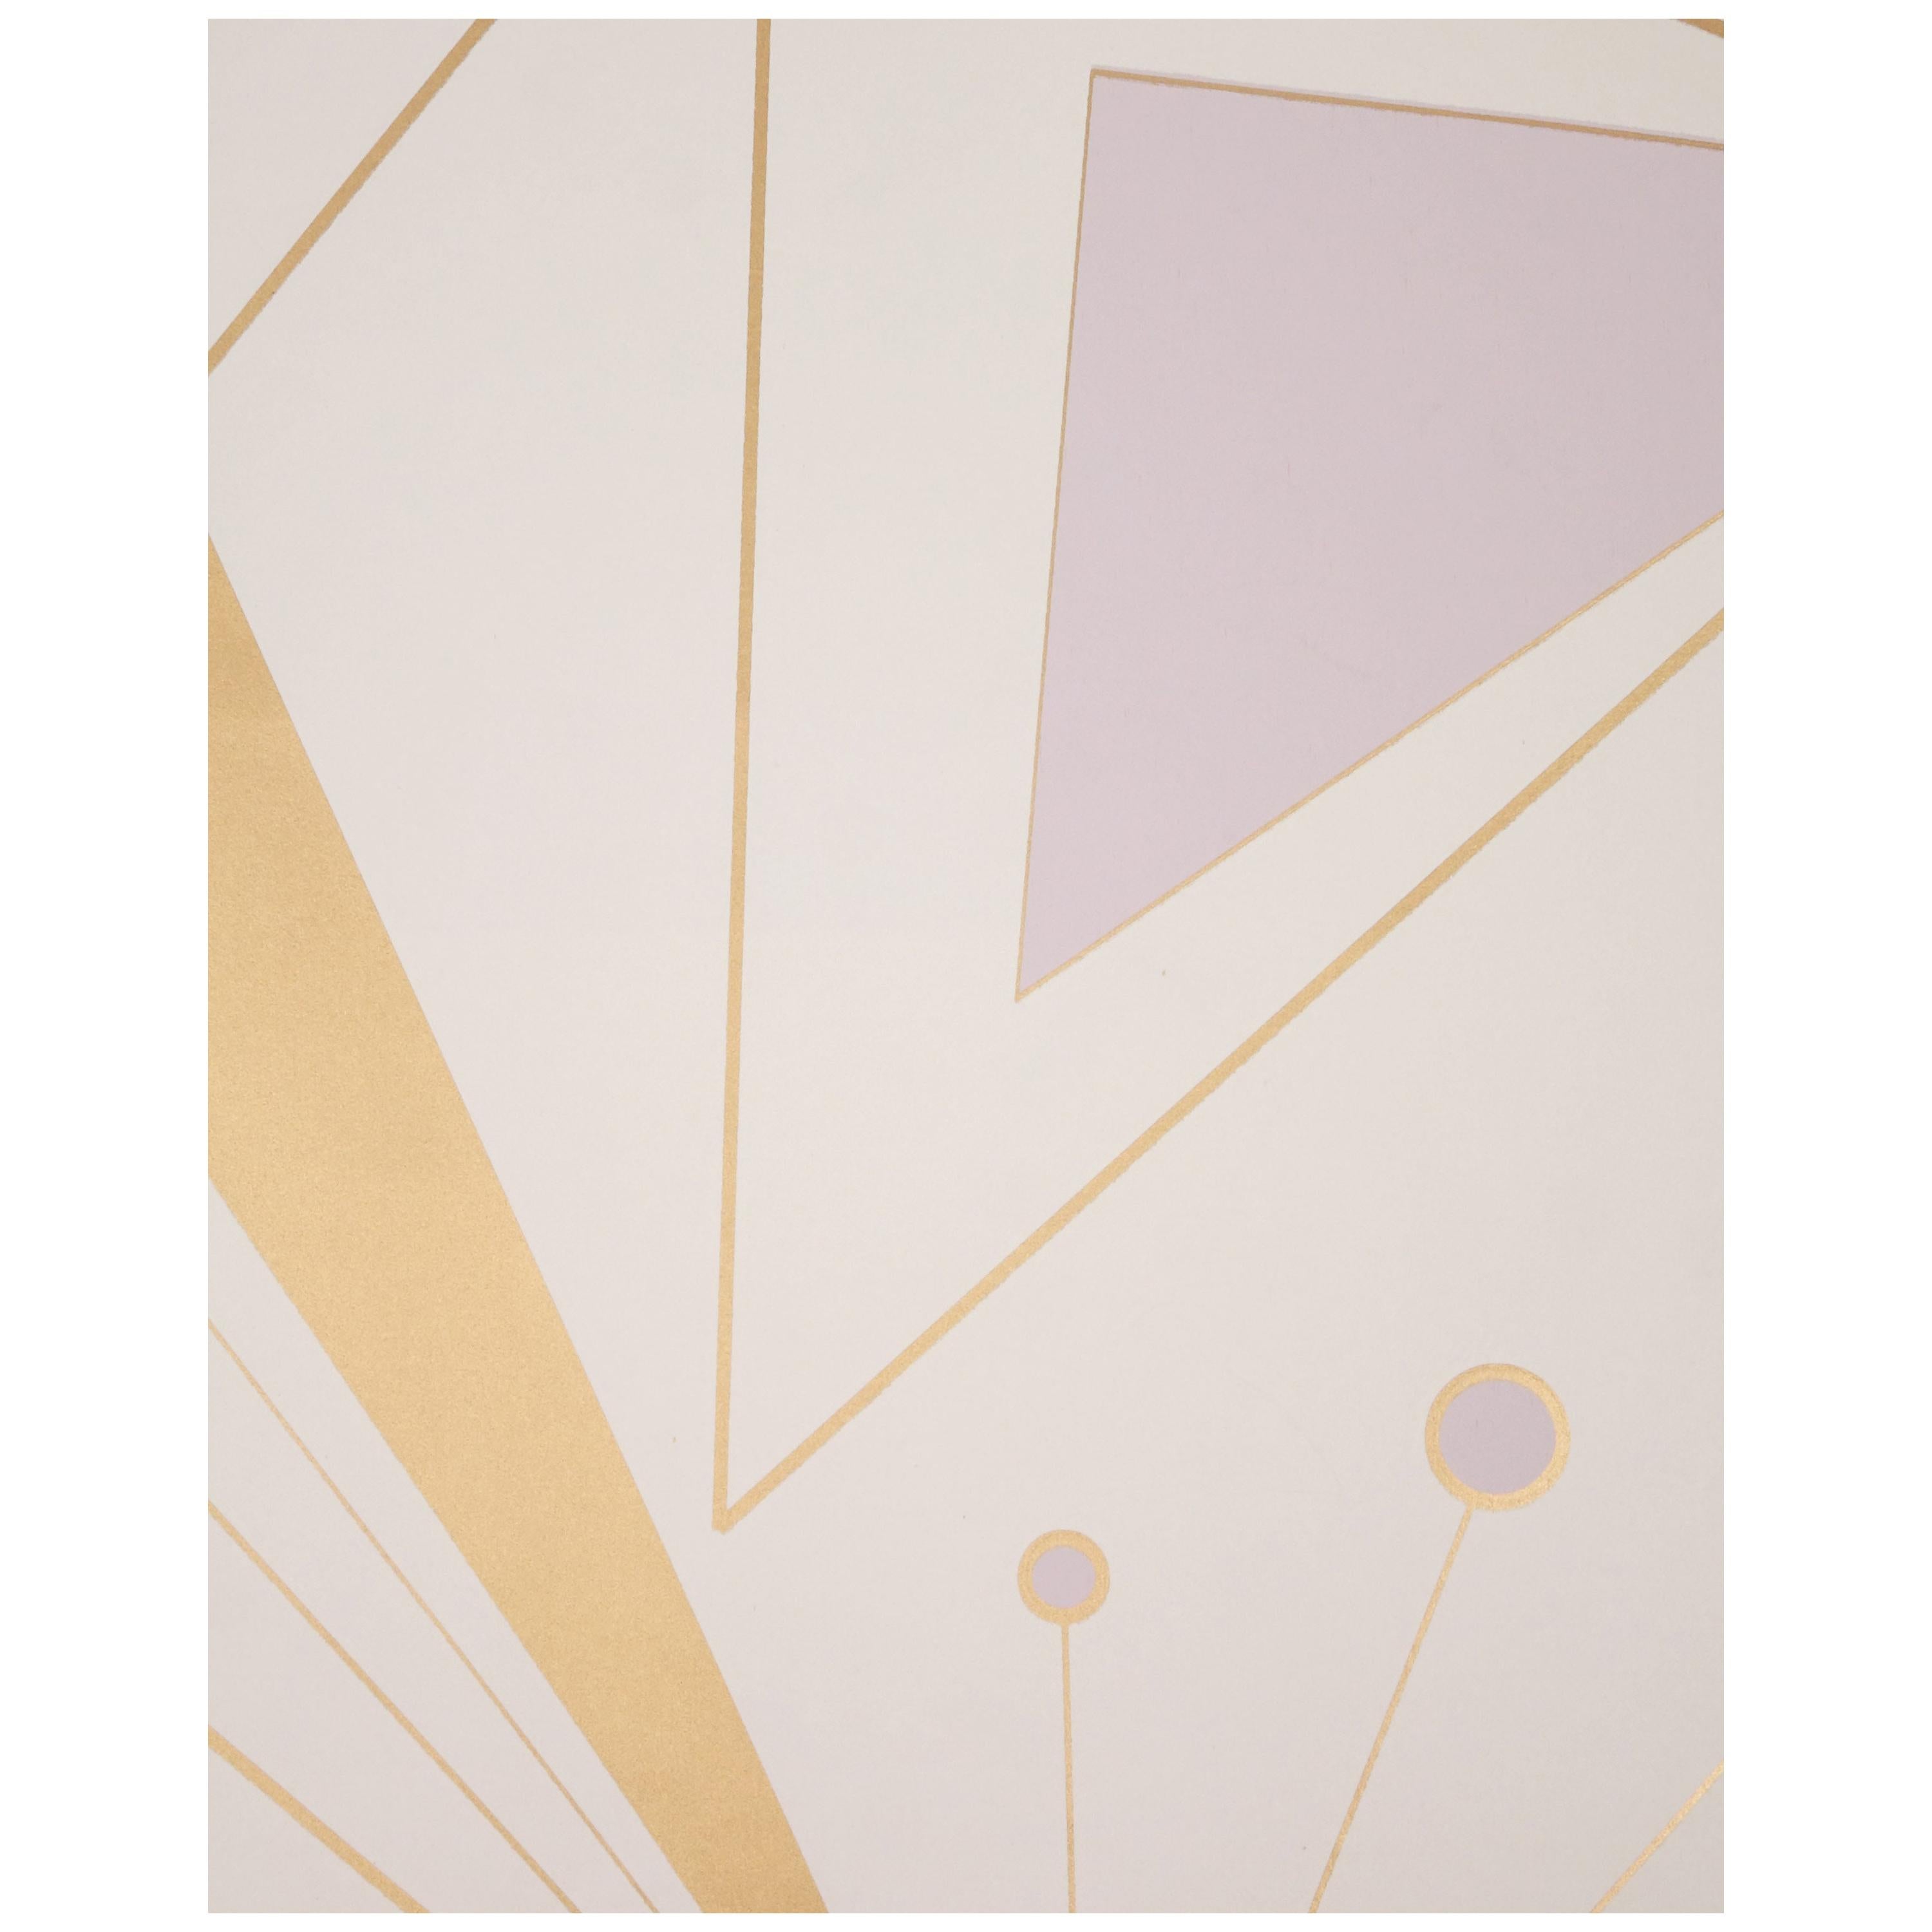 Art Deco Prisma-Raumteiler aus bedruckter Metallic-Bronze und lavendelfarbener Mist-Tapete